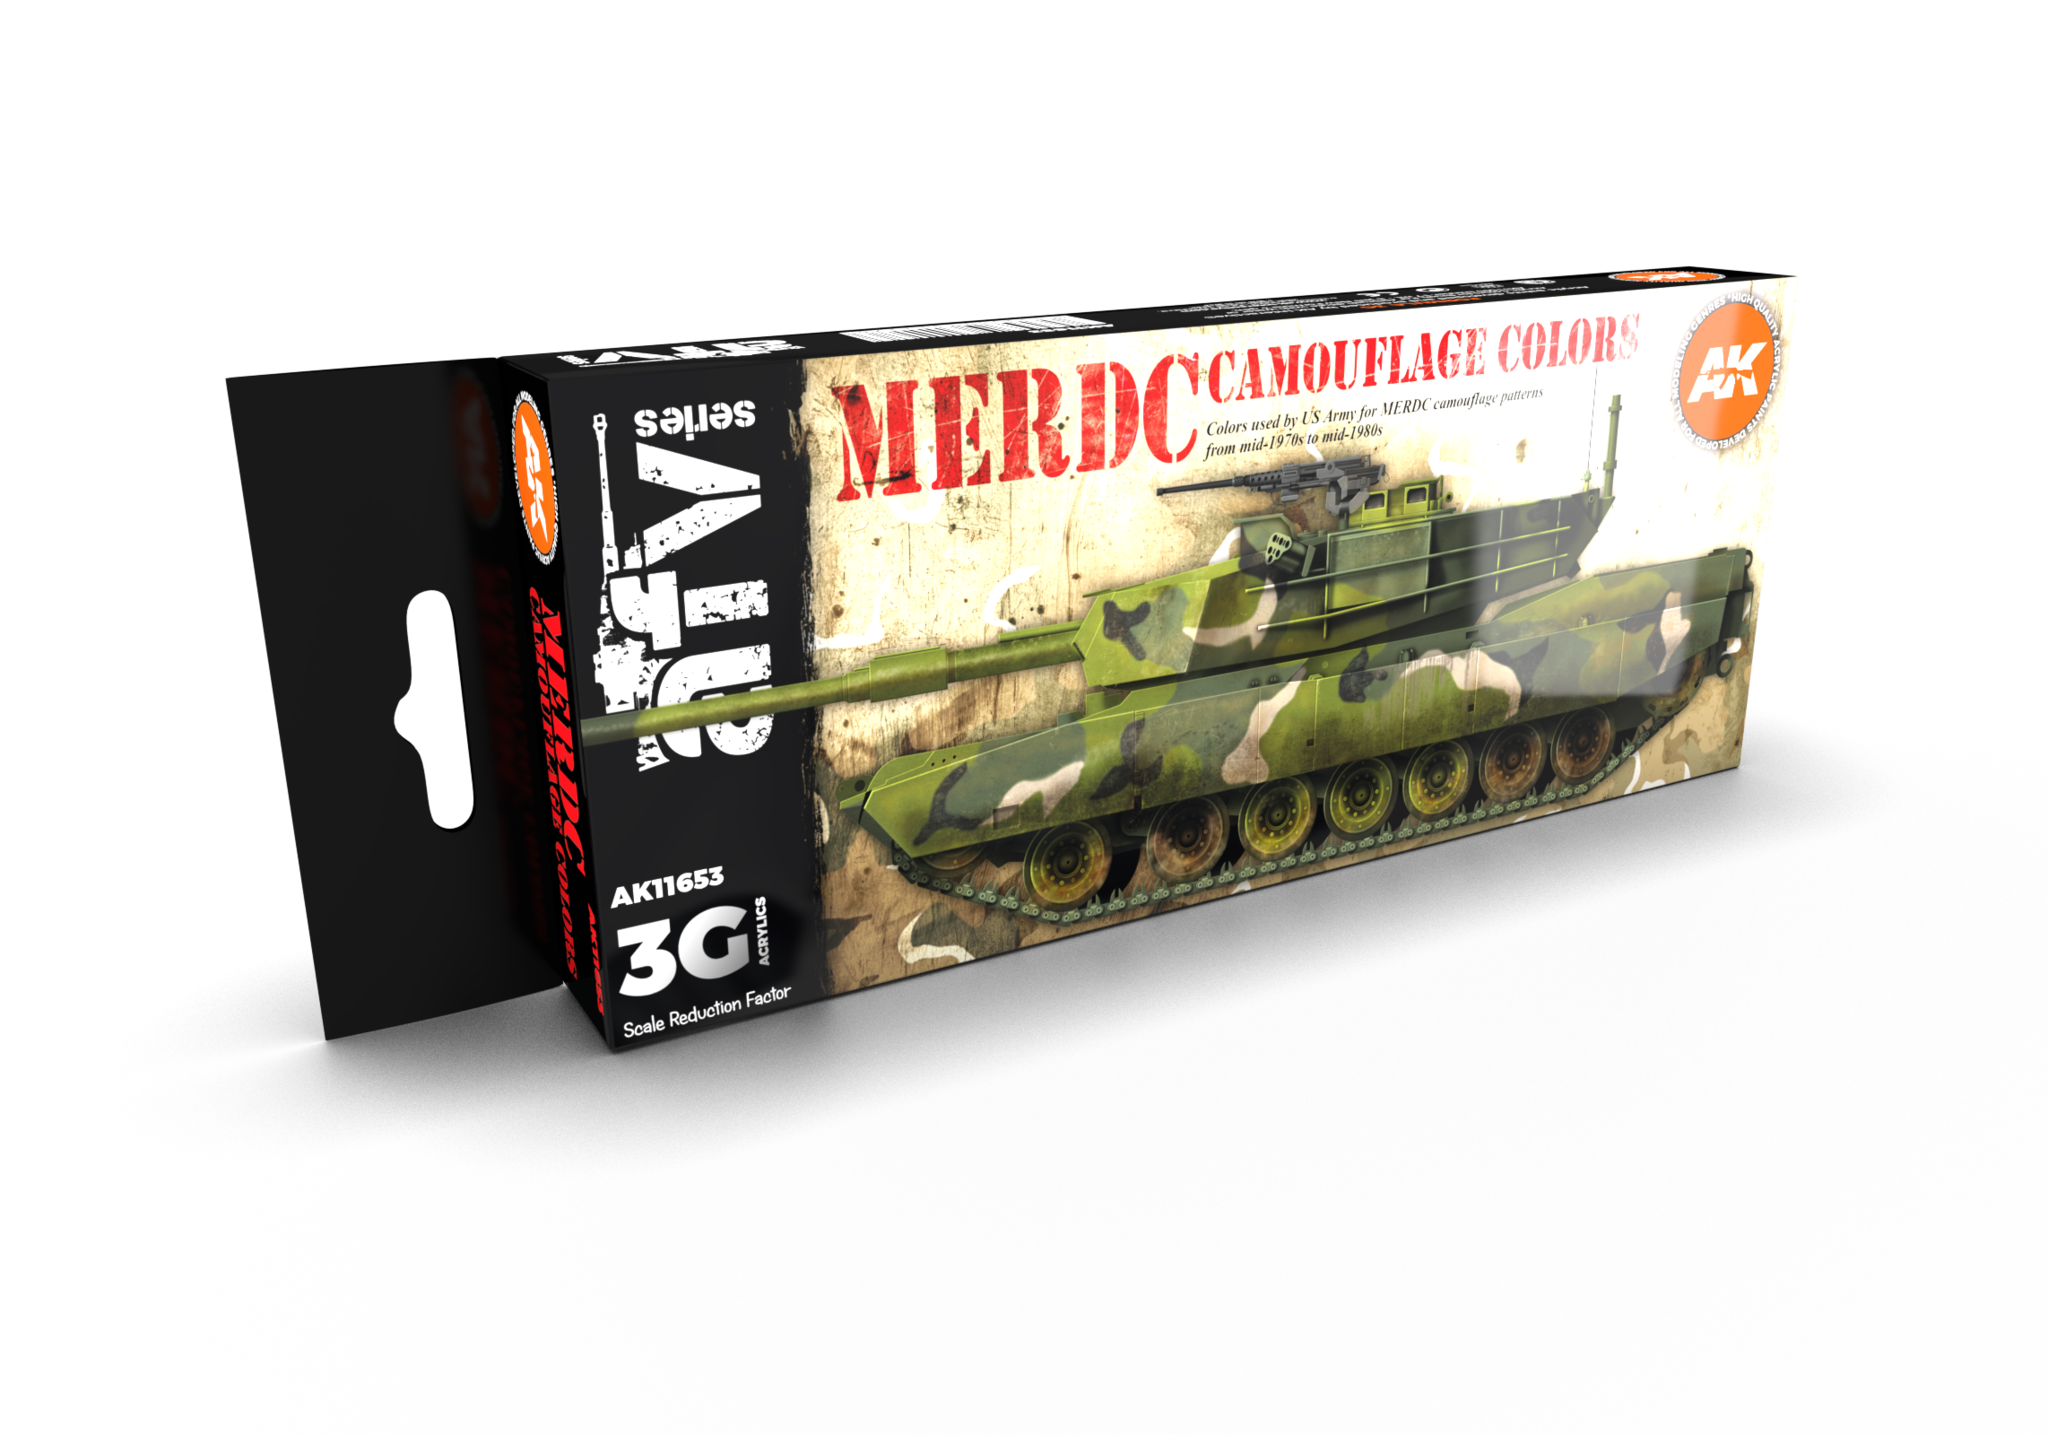 AK-Interactive MERDC Camouflage Colors Set - AK-Interactive - AK-11653